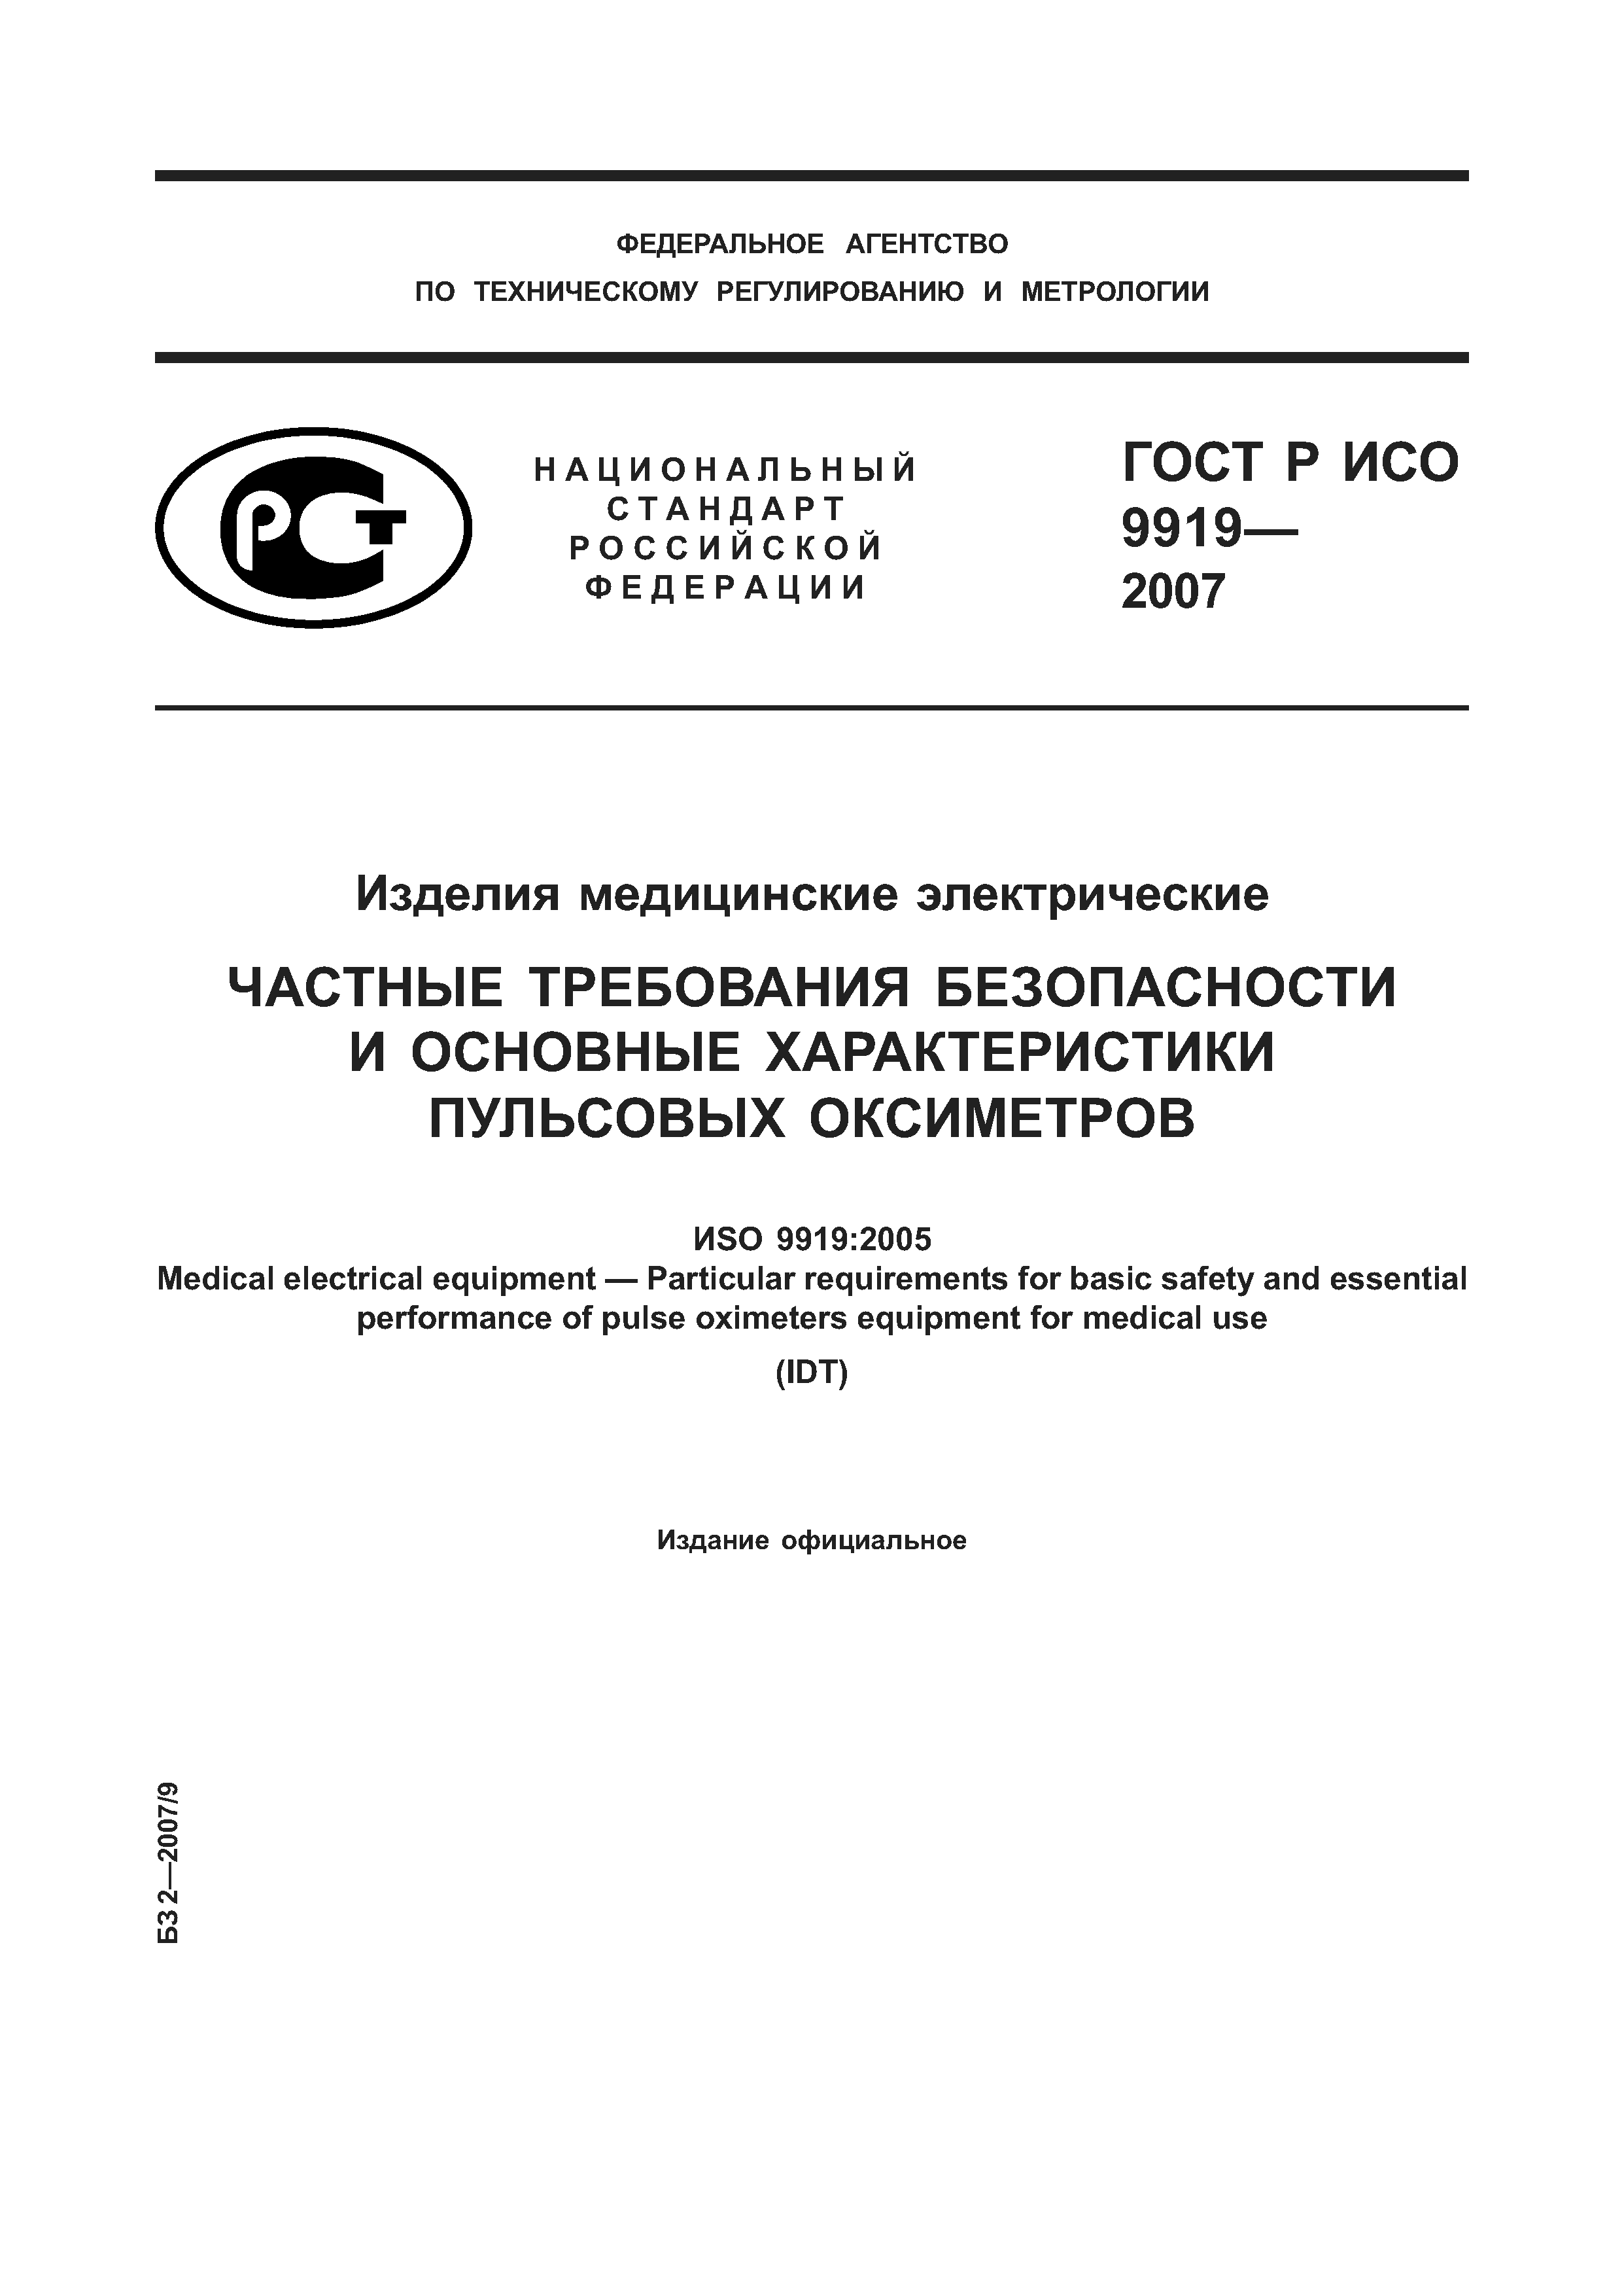 ГОСТ Р ИСО 9919-2007